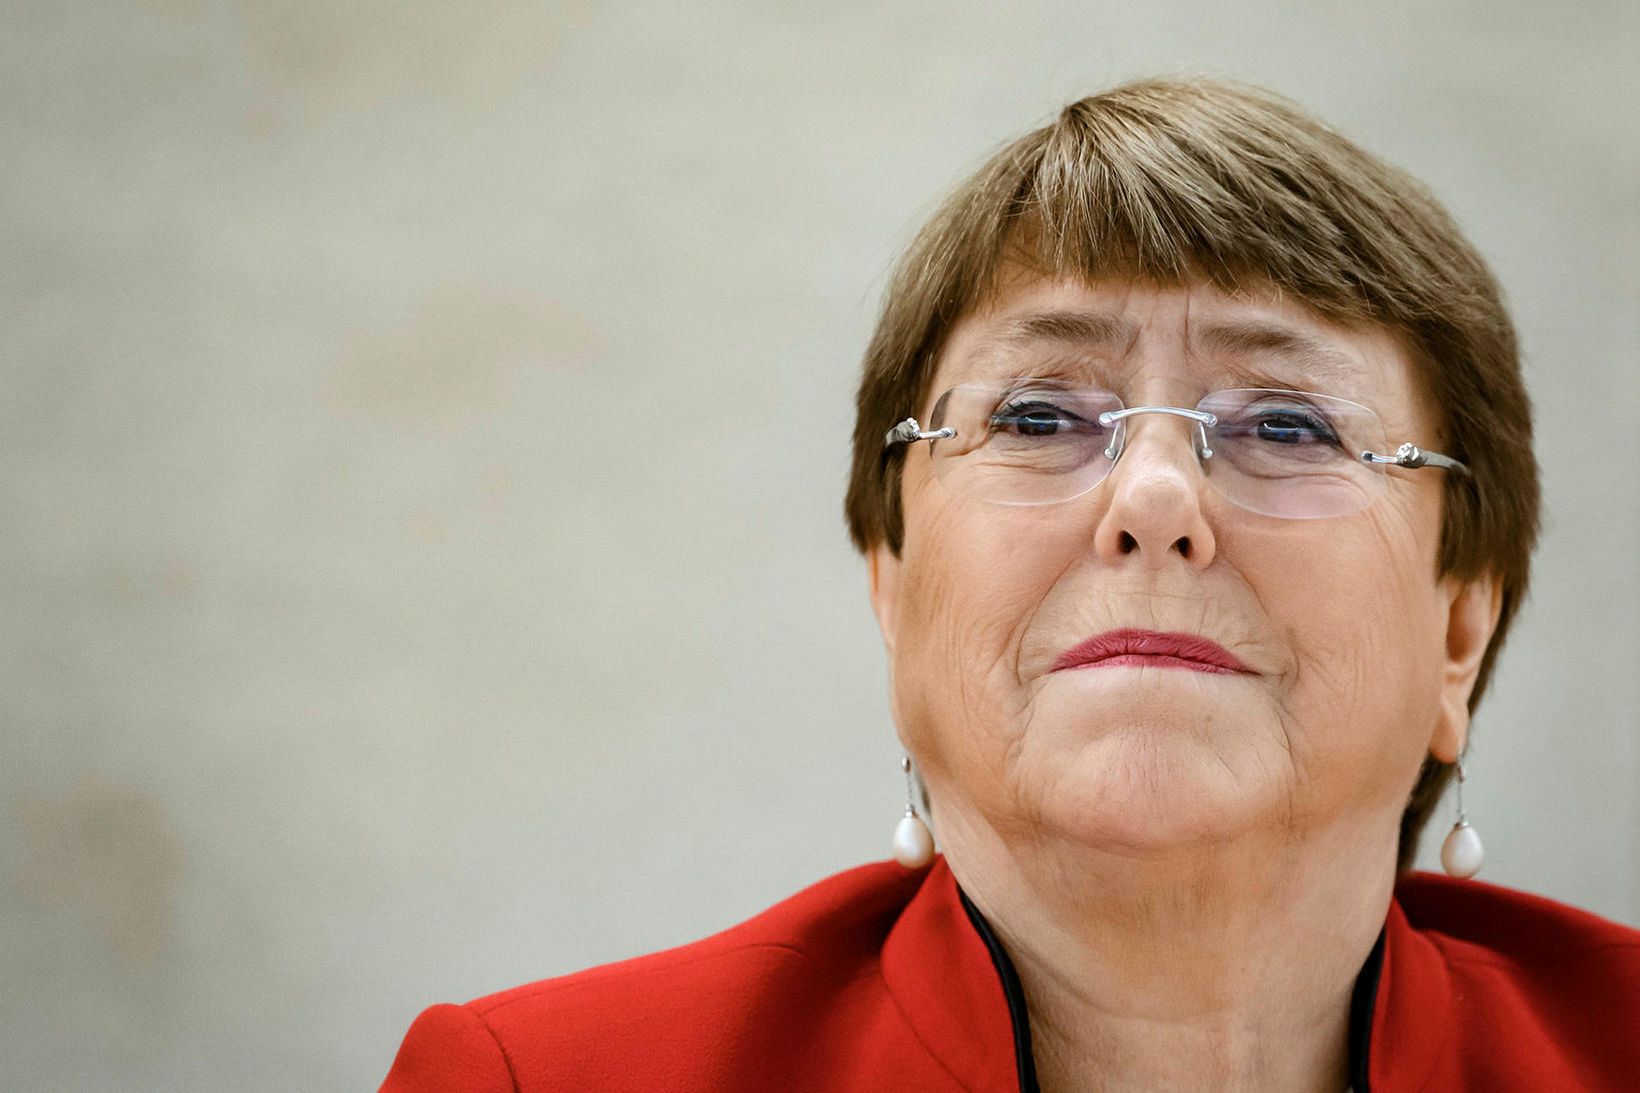 Michelle Bachelet segir mikilvægt að vernda viðkvæma fanga fyrir veirunni.